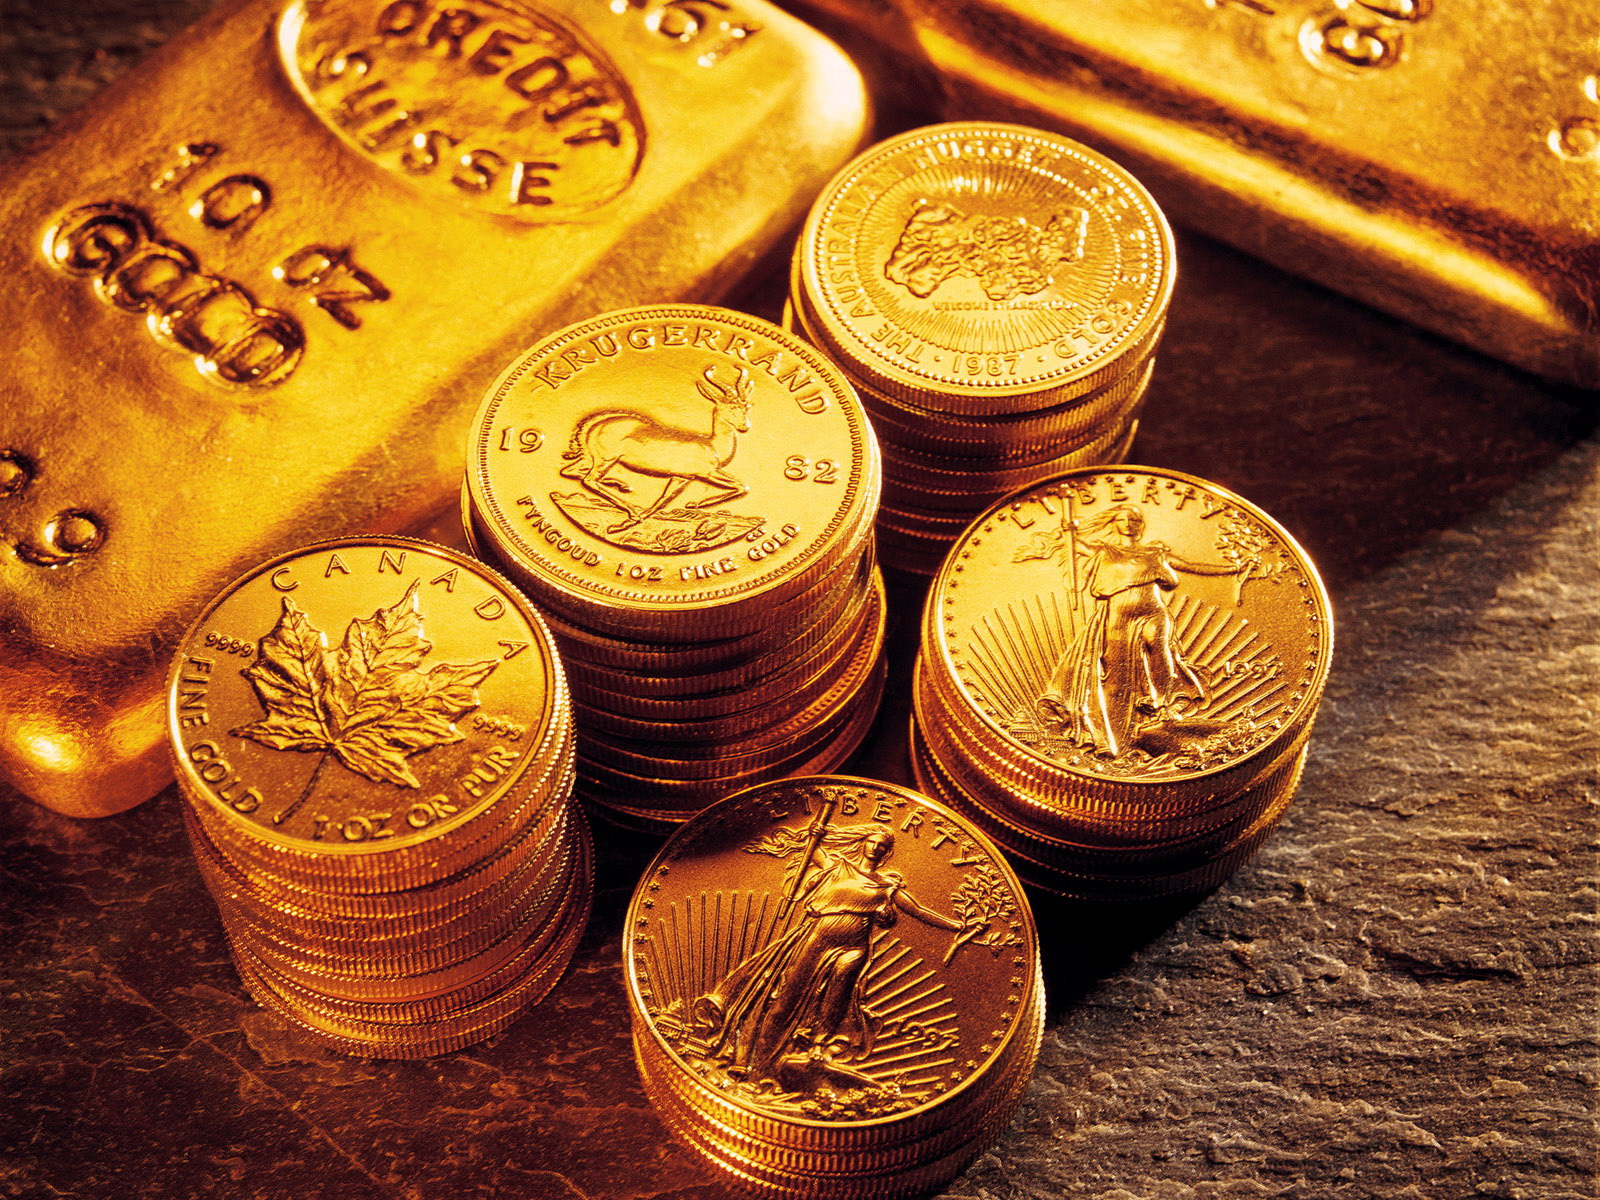 Chênh lệch giữa giá vàng thế giới và giá vàng trong nước hôm nay đang ở mức thấp 1,1 triệu đồng/lượng